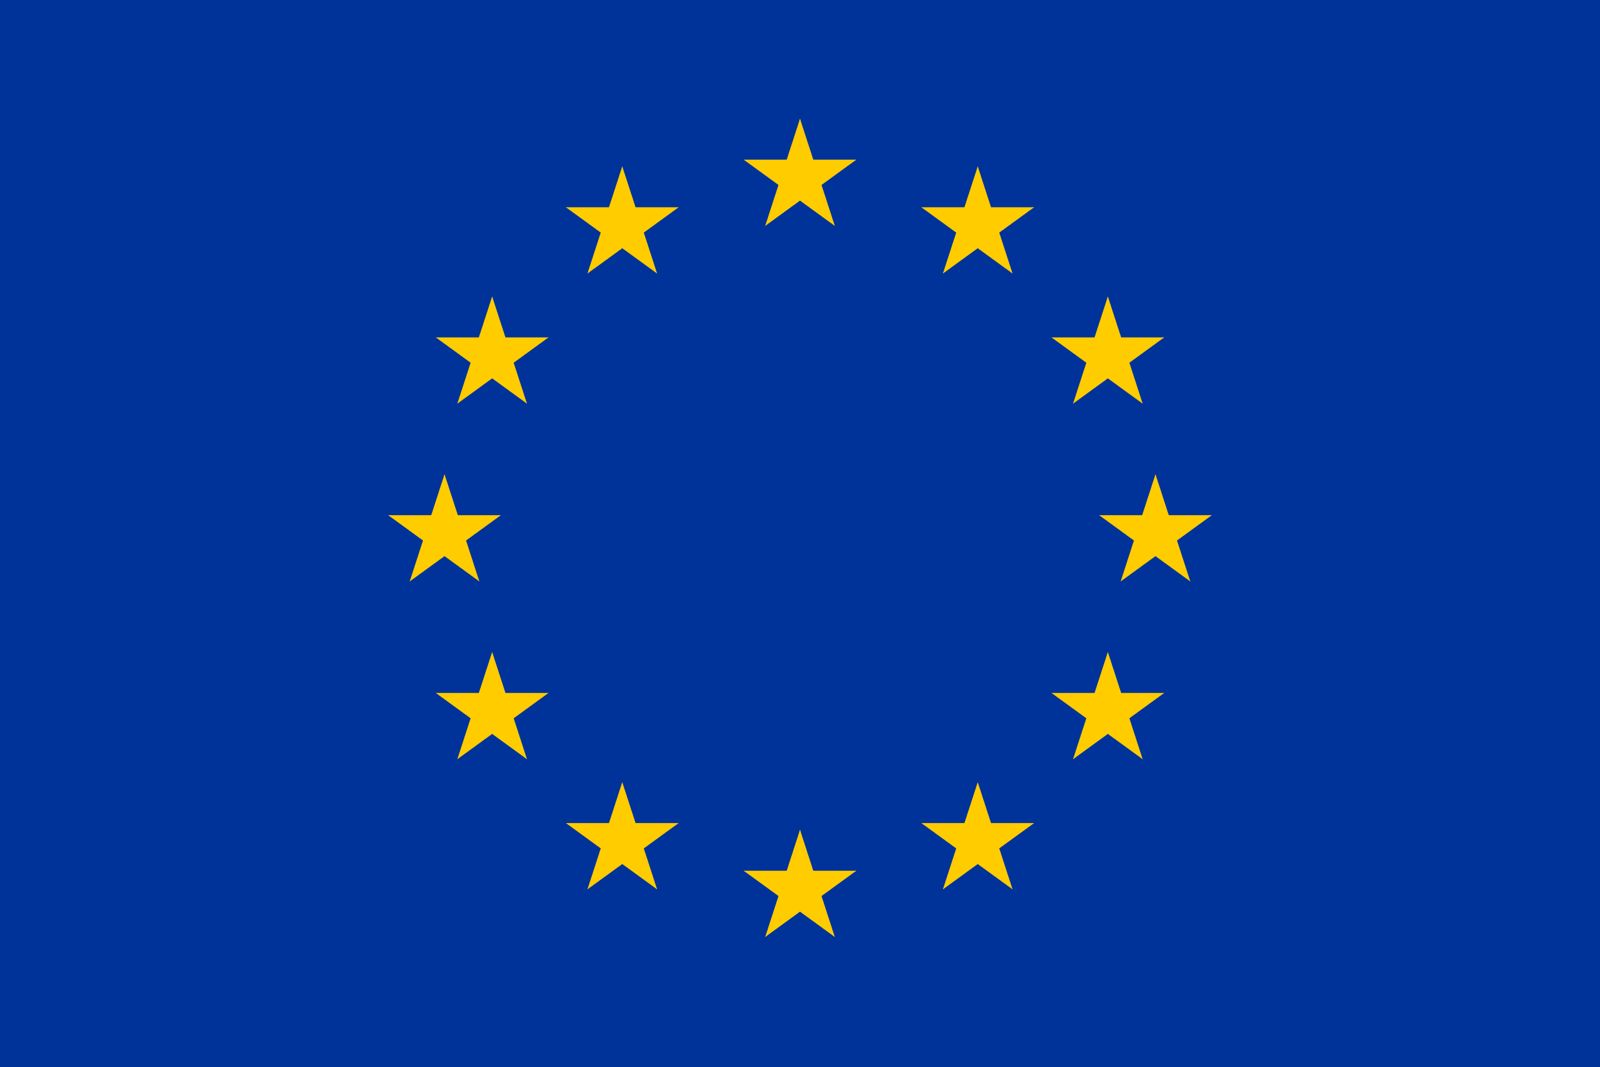 The flag of EU